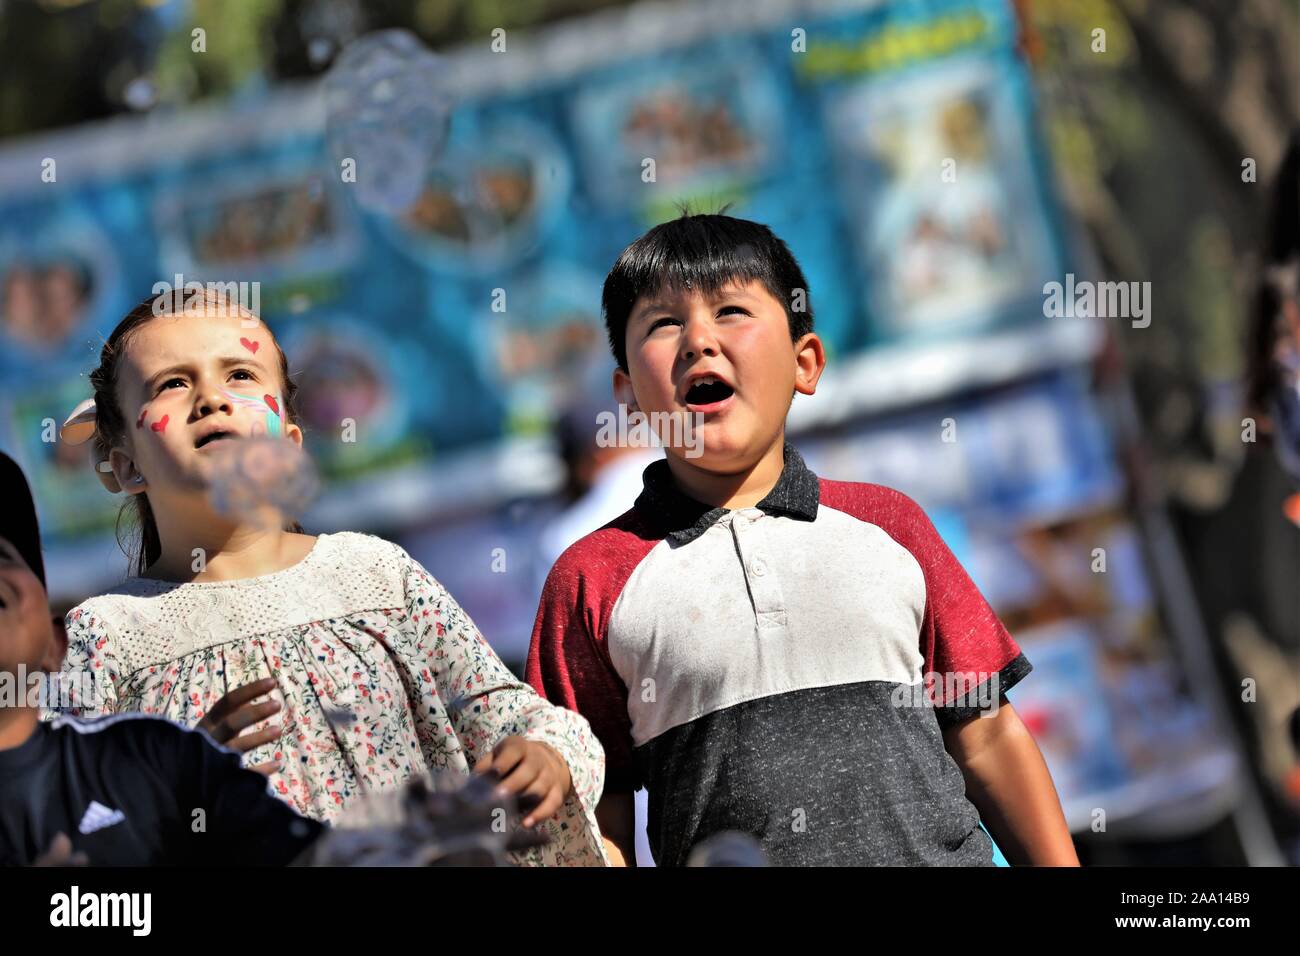 Ispanico messicano latina i bambini, i ragazzi e le ragazze a caccia di bolle dal circo fair act fatta con acqua e sapone per pubblico spettacolo e divertimento per tutta la famiglia Foto Stock